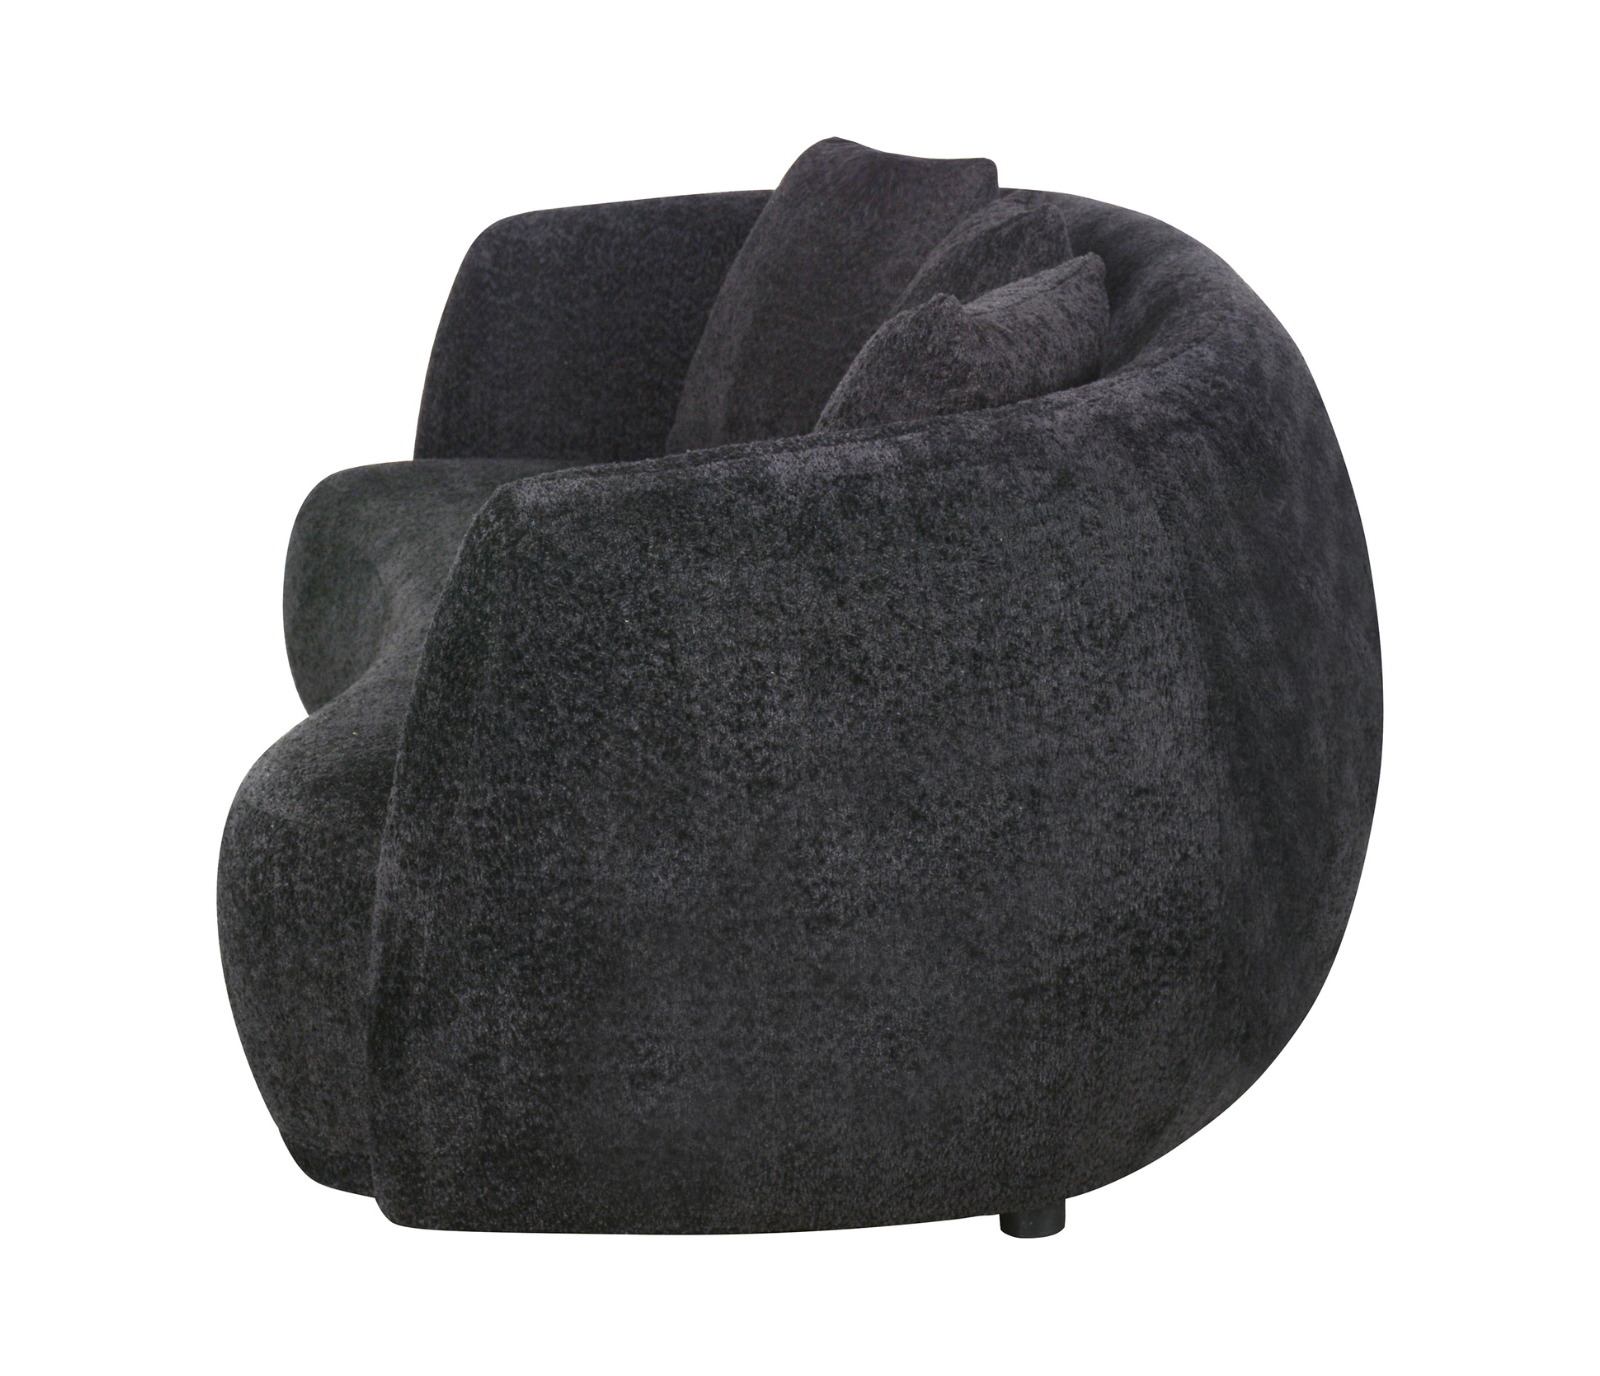 Alba Curve Sofa - Black Boucle Fabric